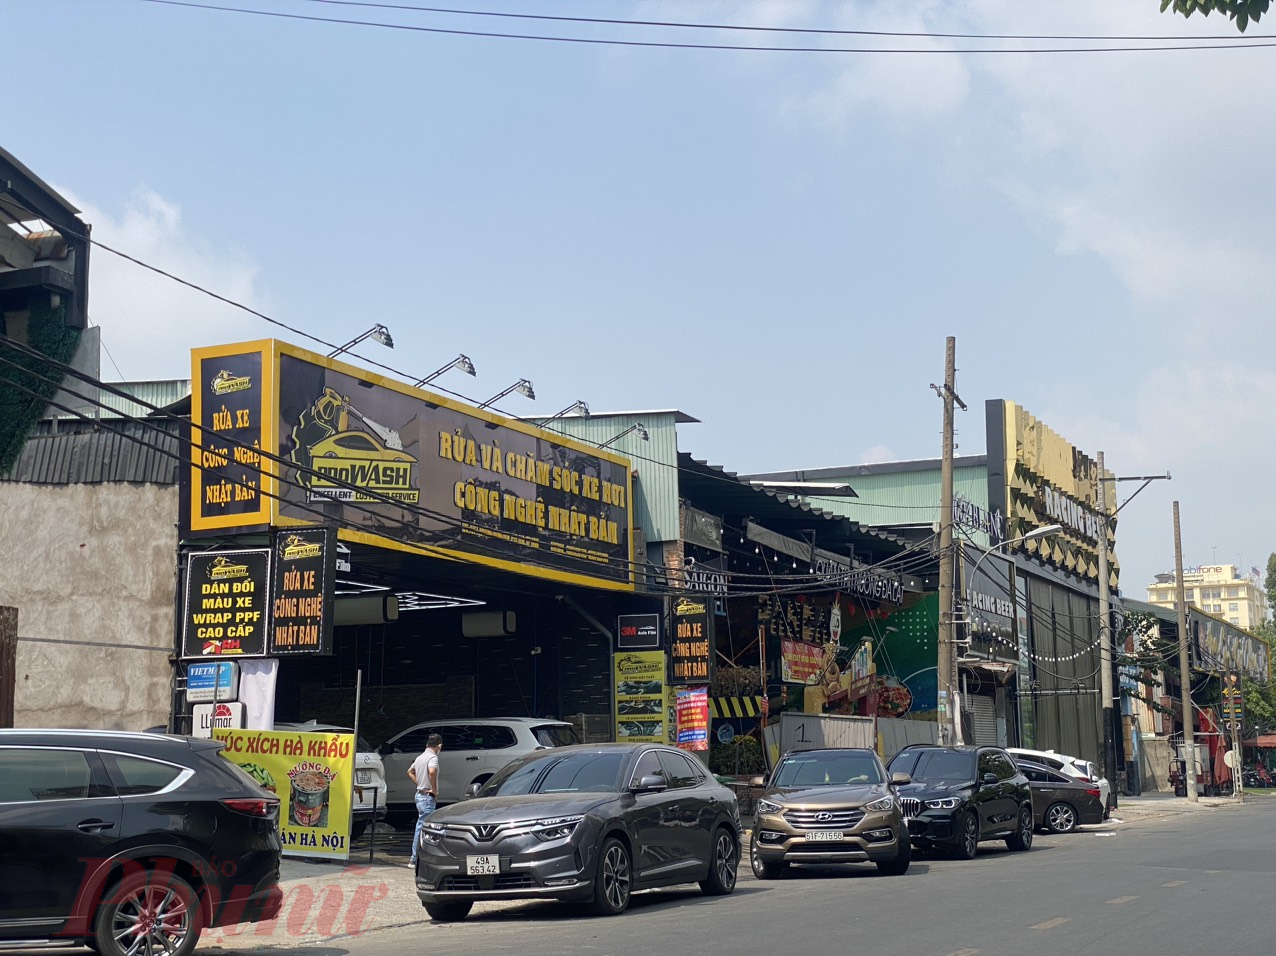 Ngoài rửa xe máy, dịch vụ rửa, chăm sóc xe ô tô cũng đang hót trong những ngày này. Tại một tiệm trên đường Đồng Nai, quận 10, xe ô tô xếp hàng chờ đến lượt.